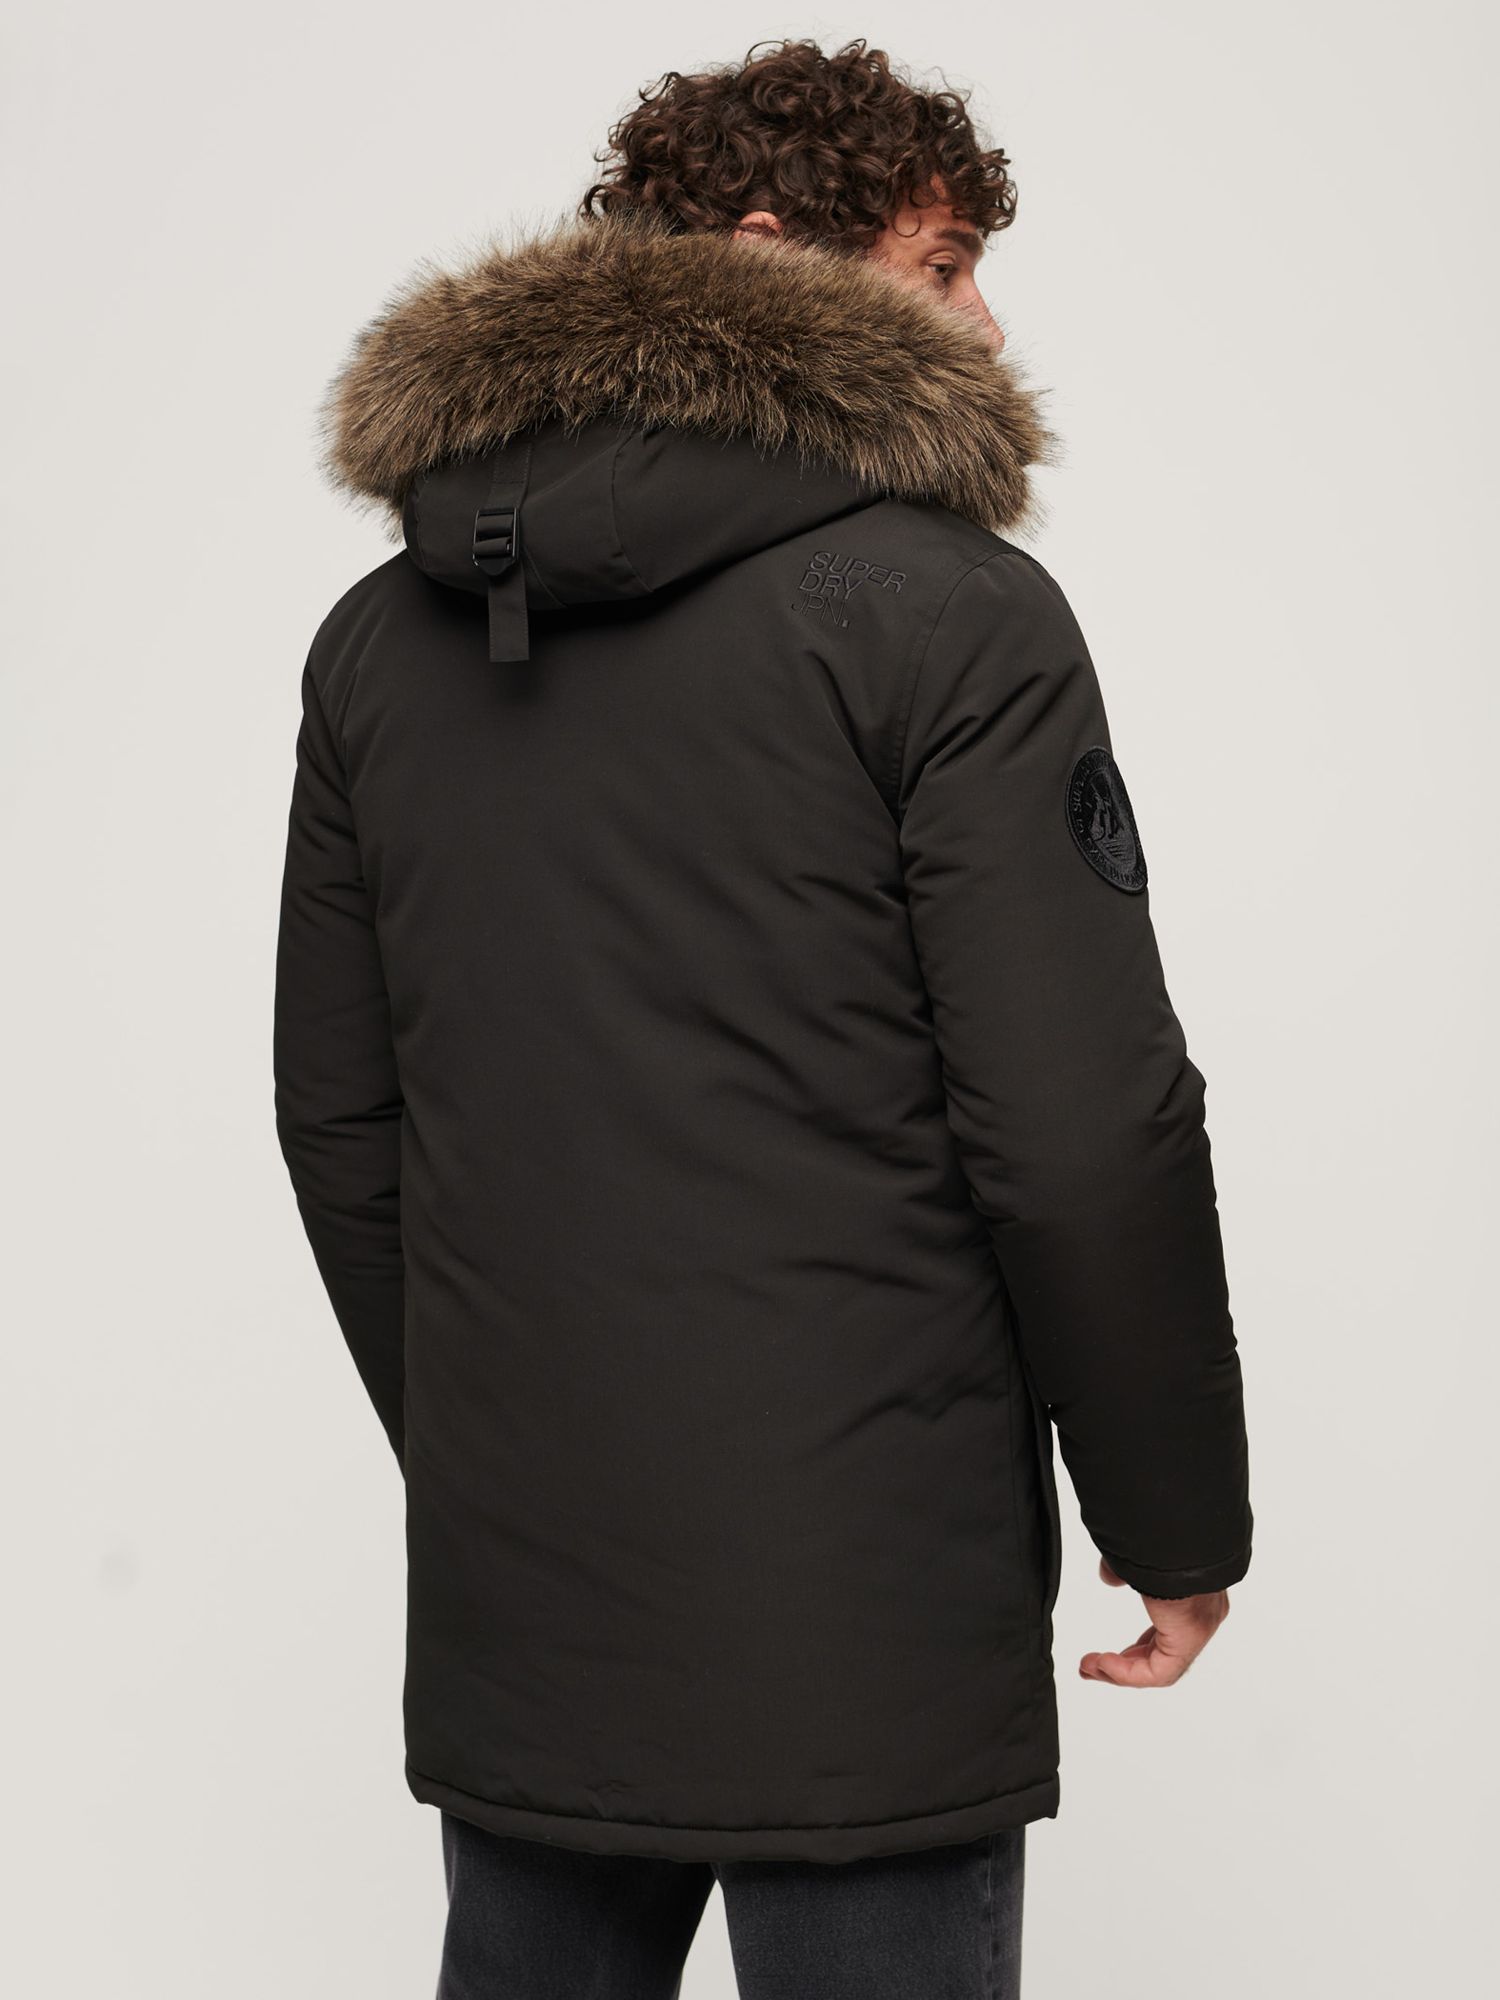 Superdry Everest Faux Fur Hooded Parka Coat, Black at John Lewis & Partners